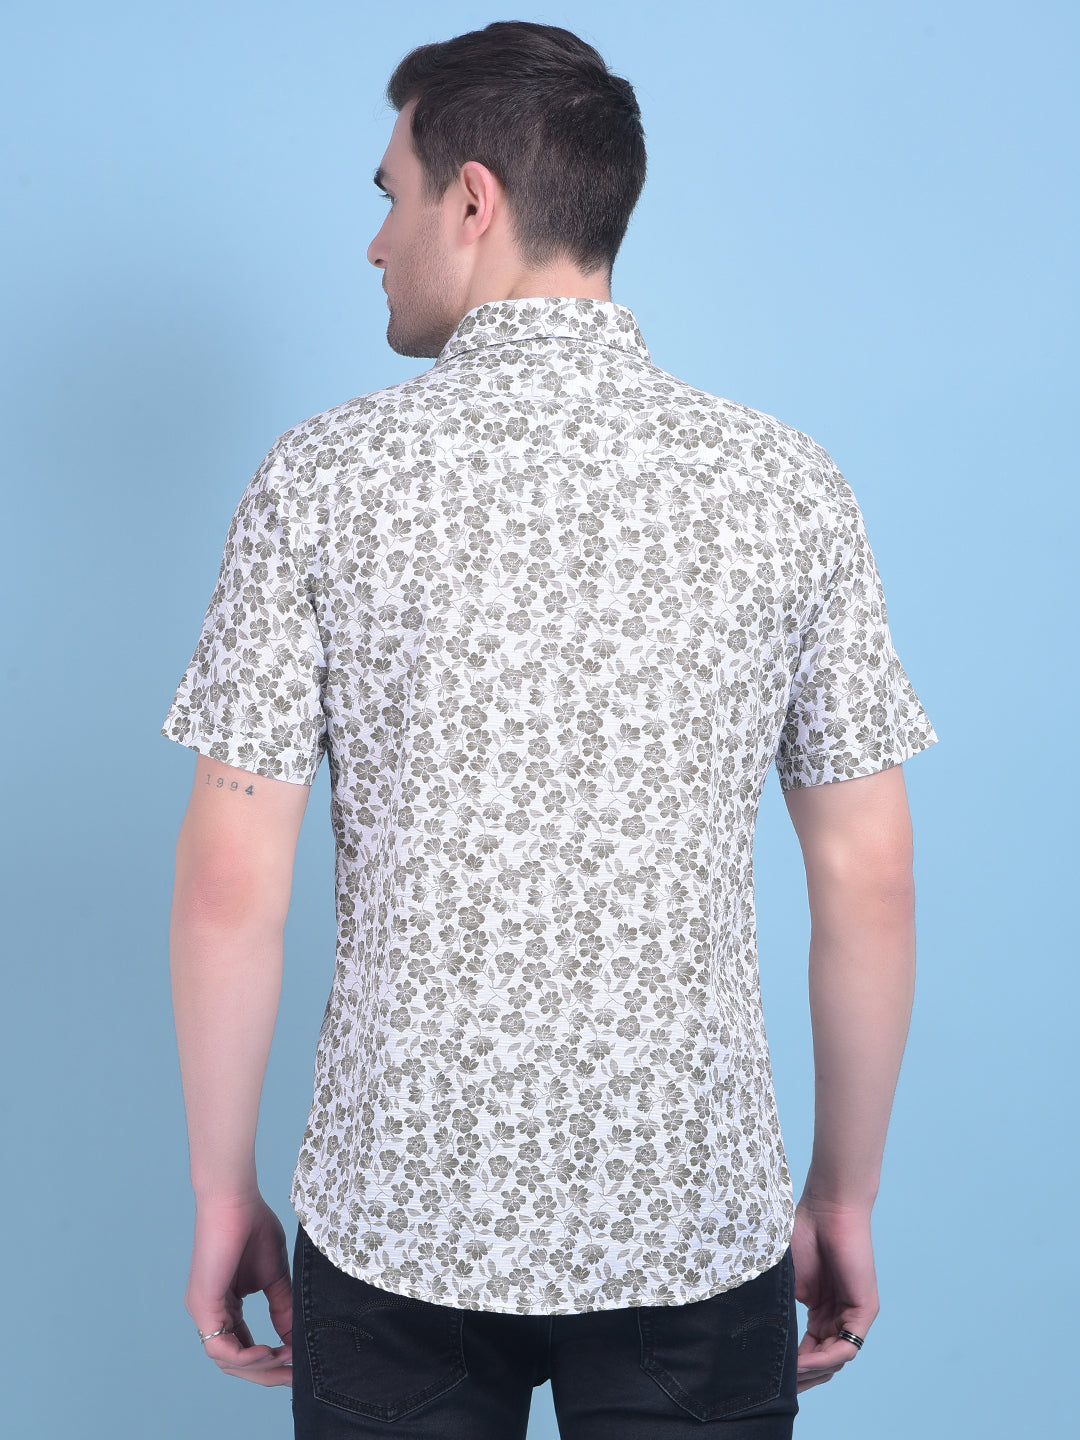 Olive Floral Print 100% Cotton Shirt-Men Shirts-Crimsoune Club